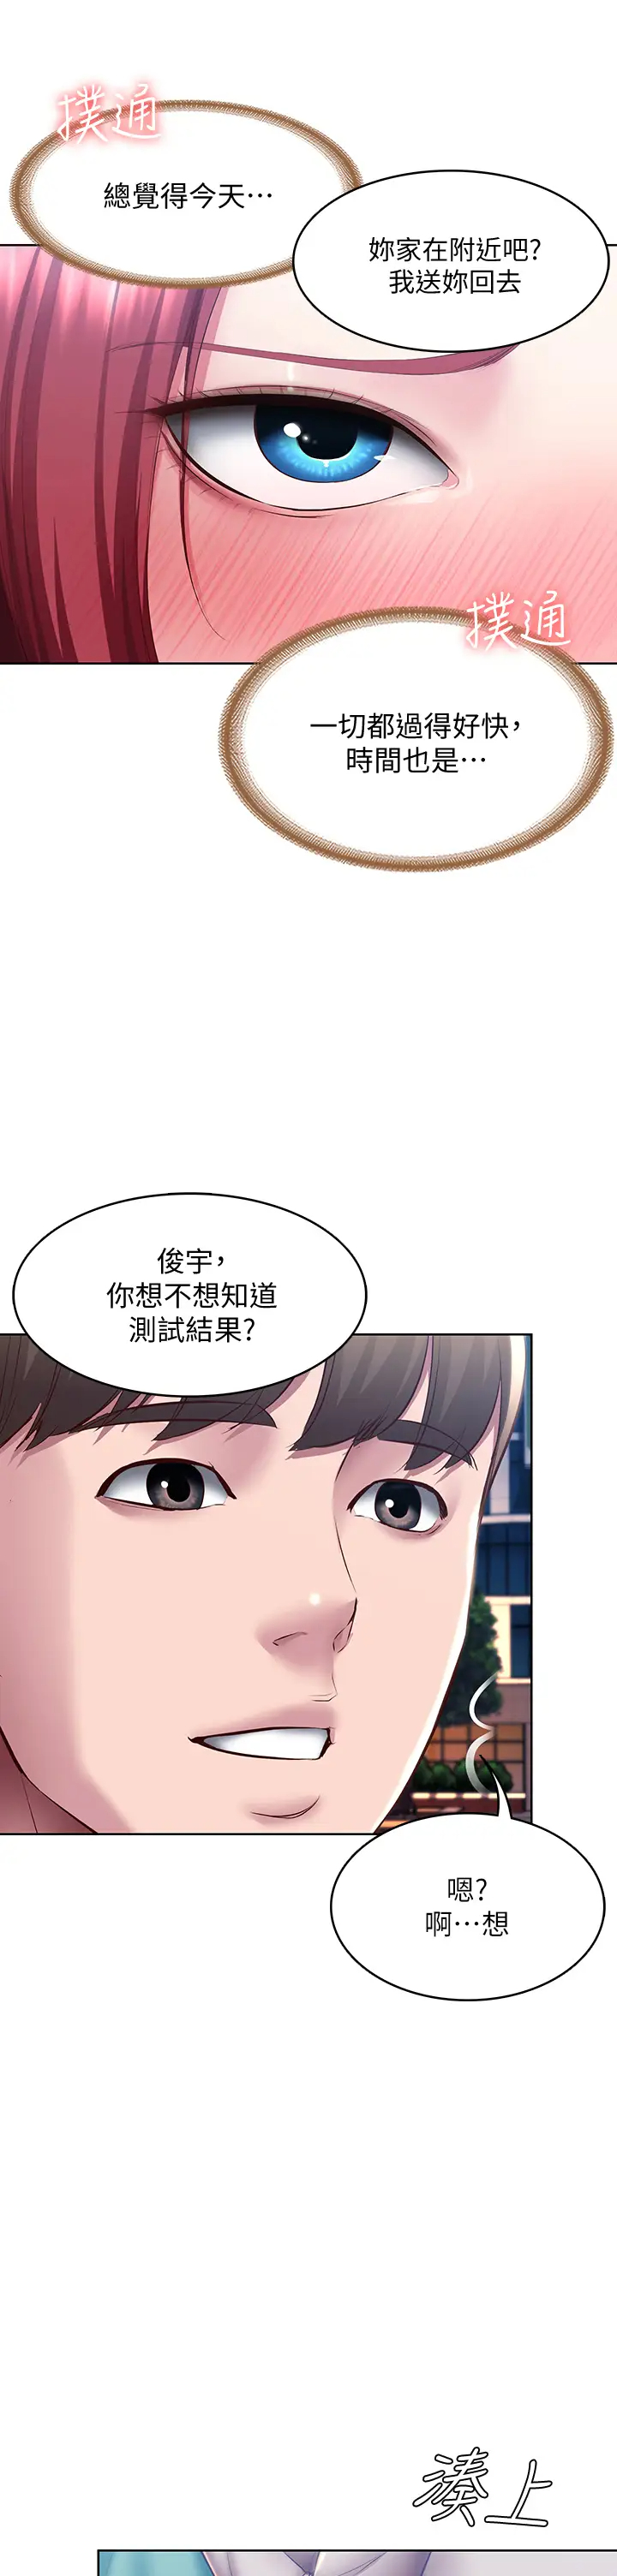 韩国污漫画 寄宿日記 第97话教授淫乱的性爱讲座 2